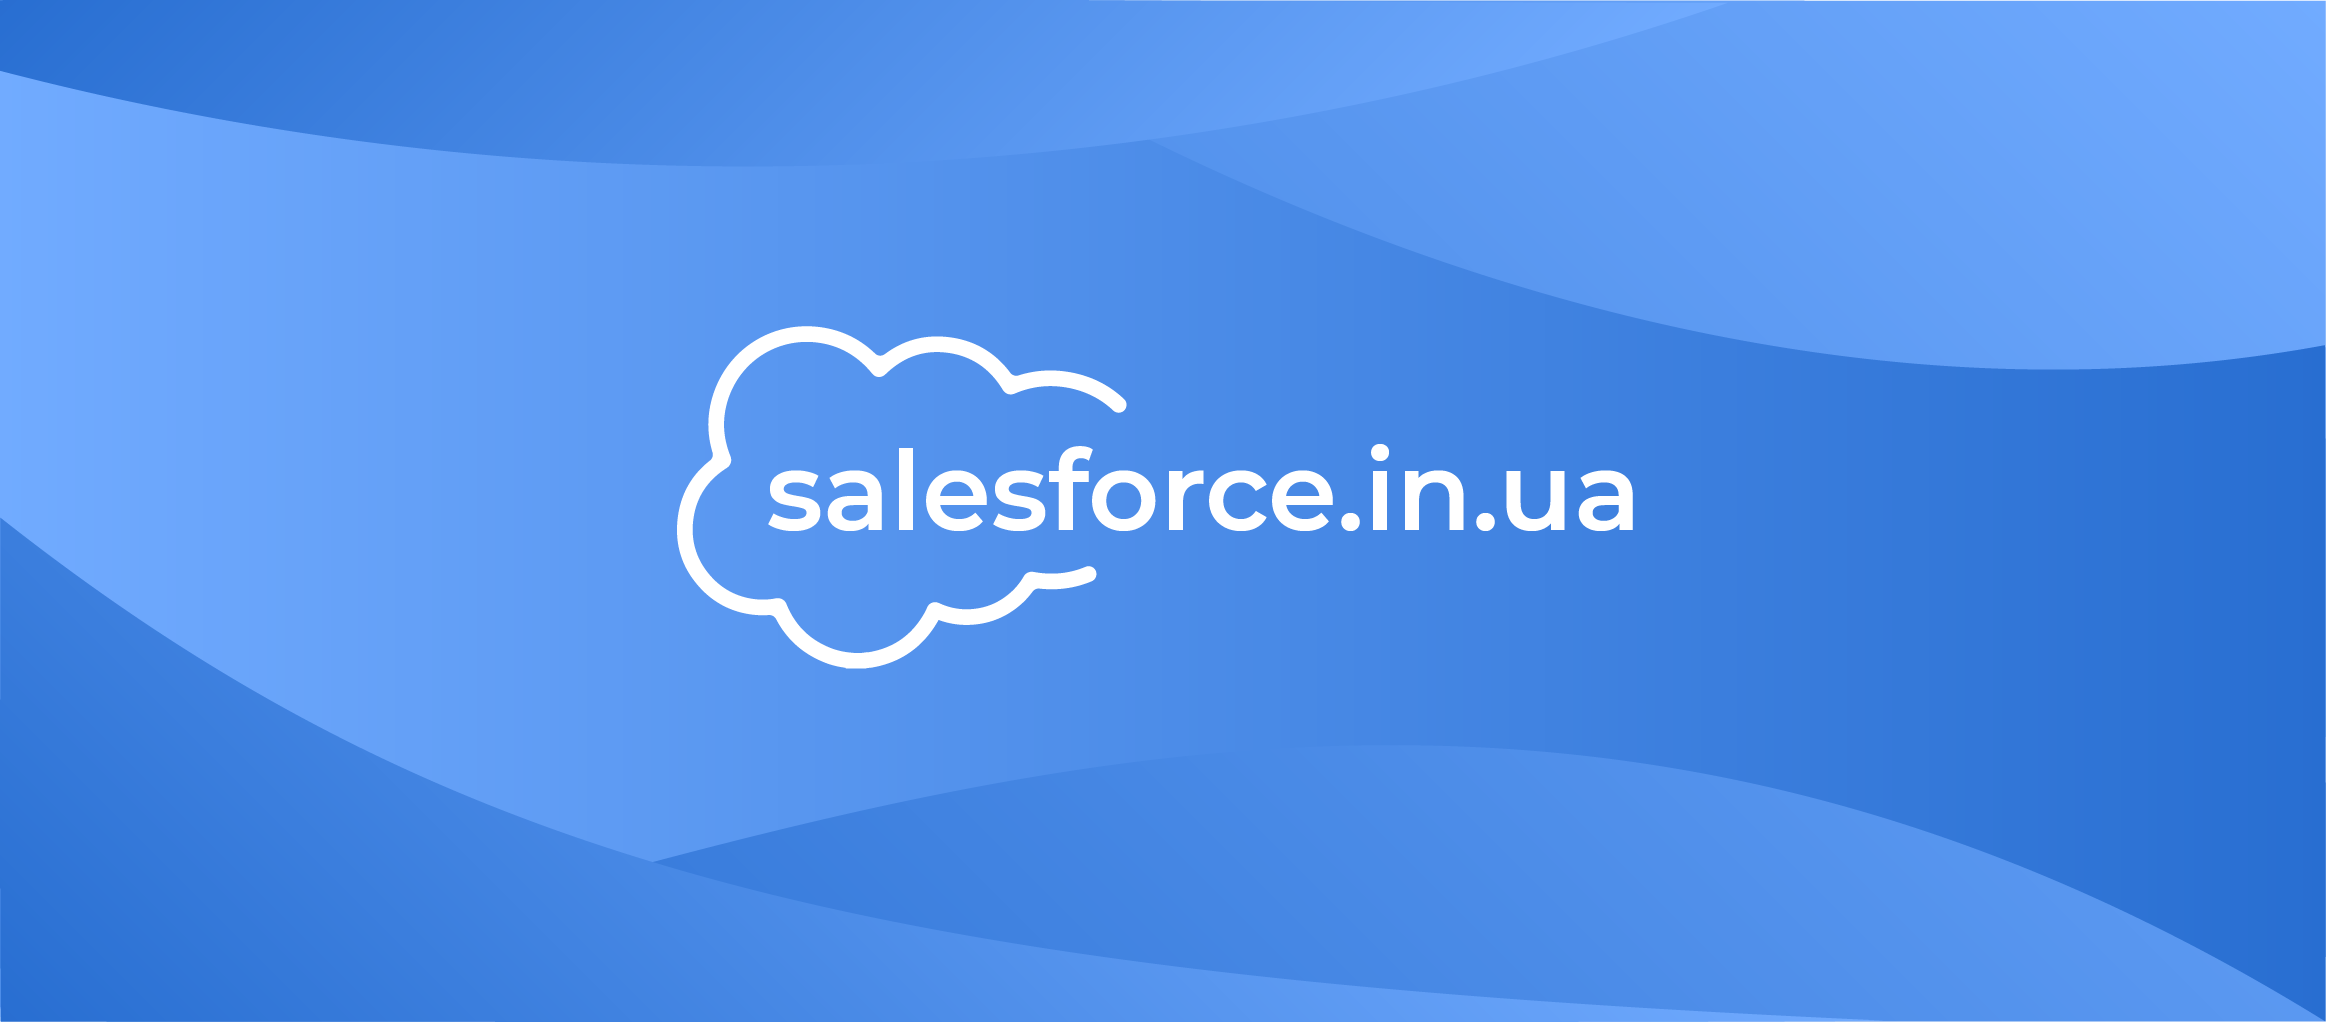 salesforce.in.ua